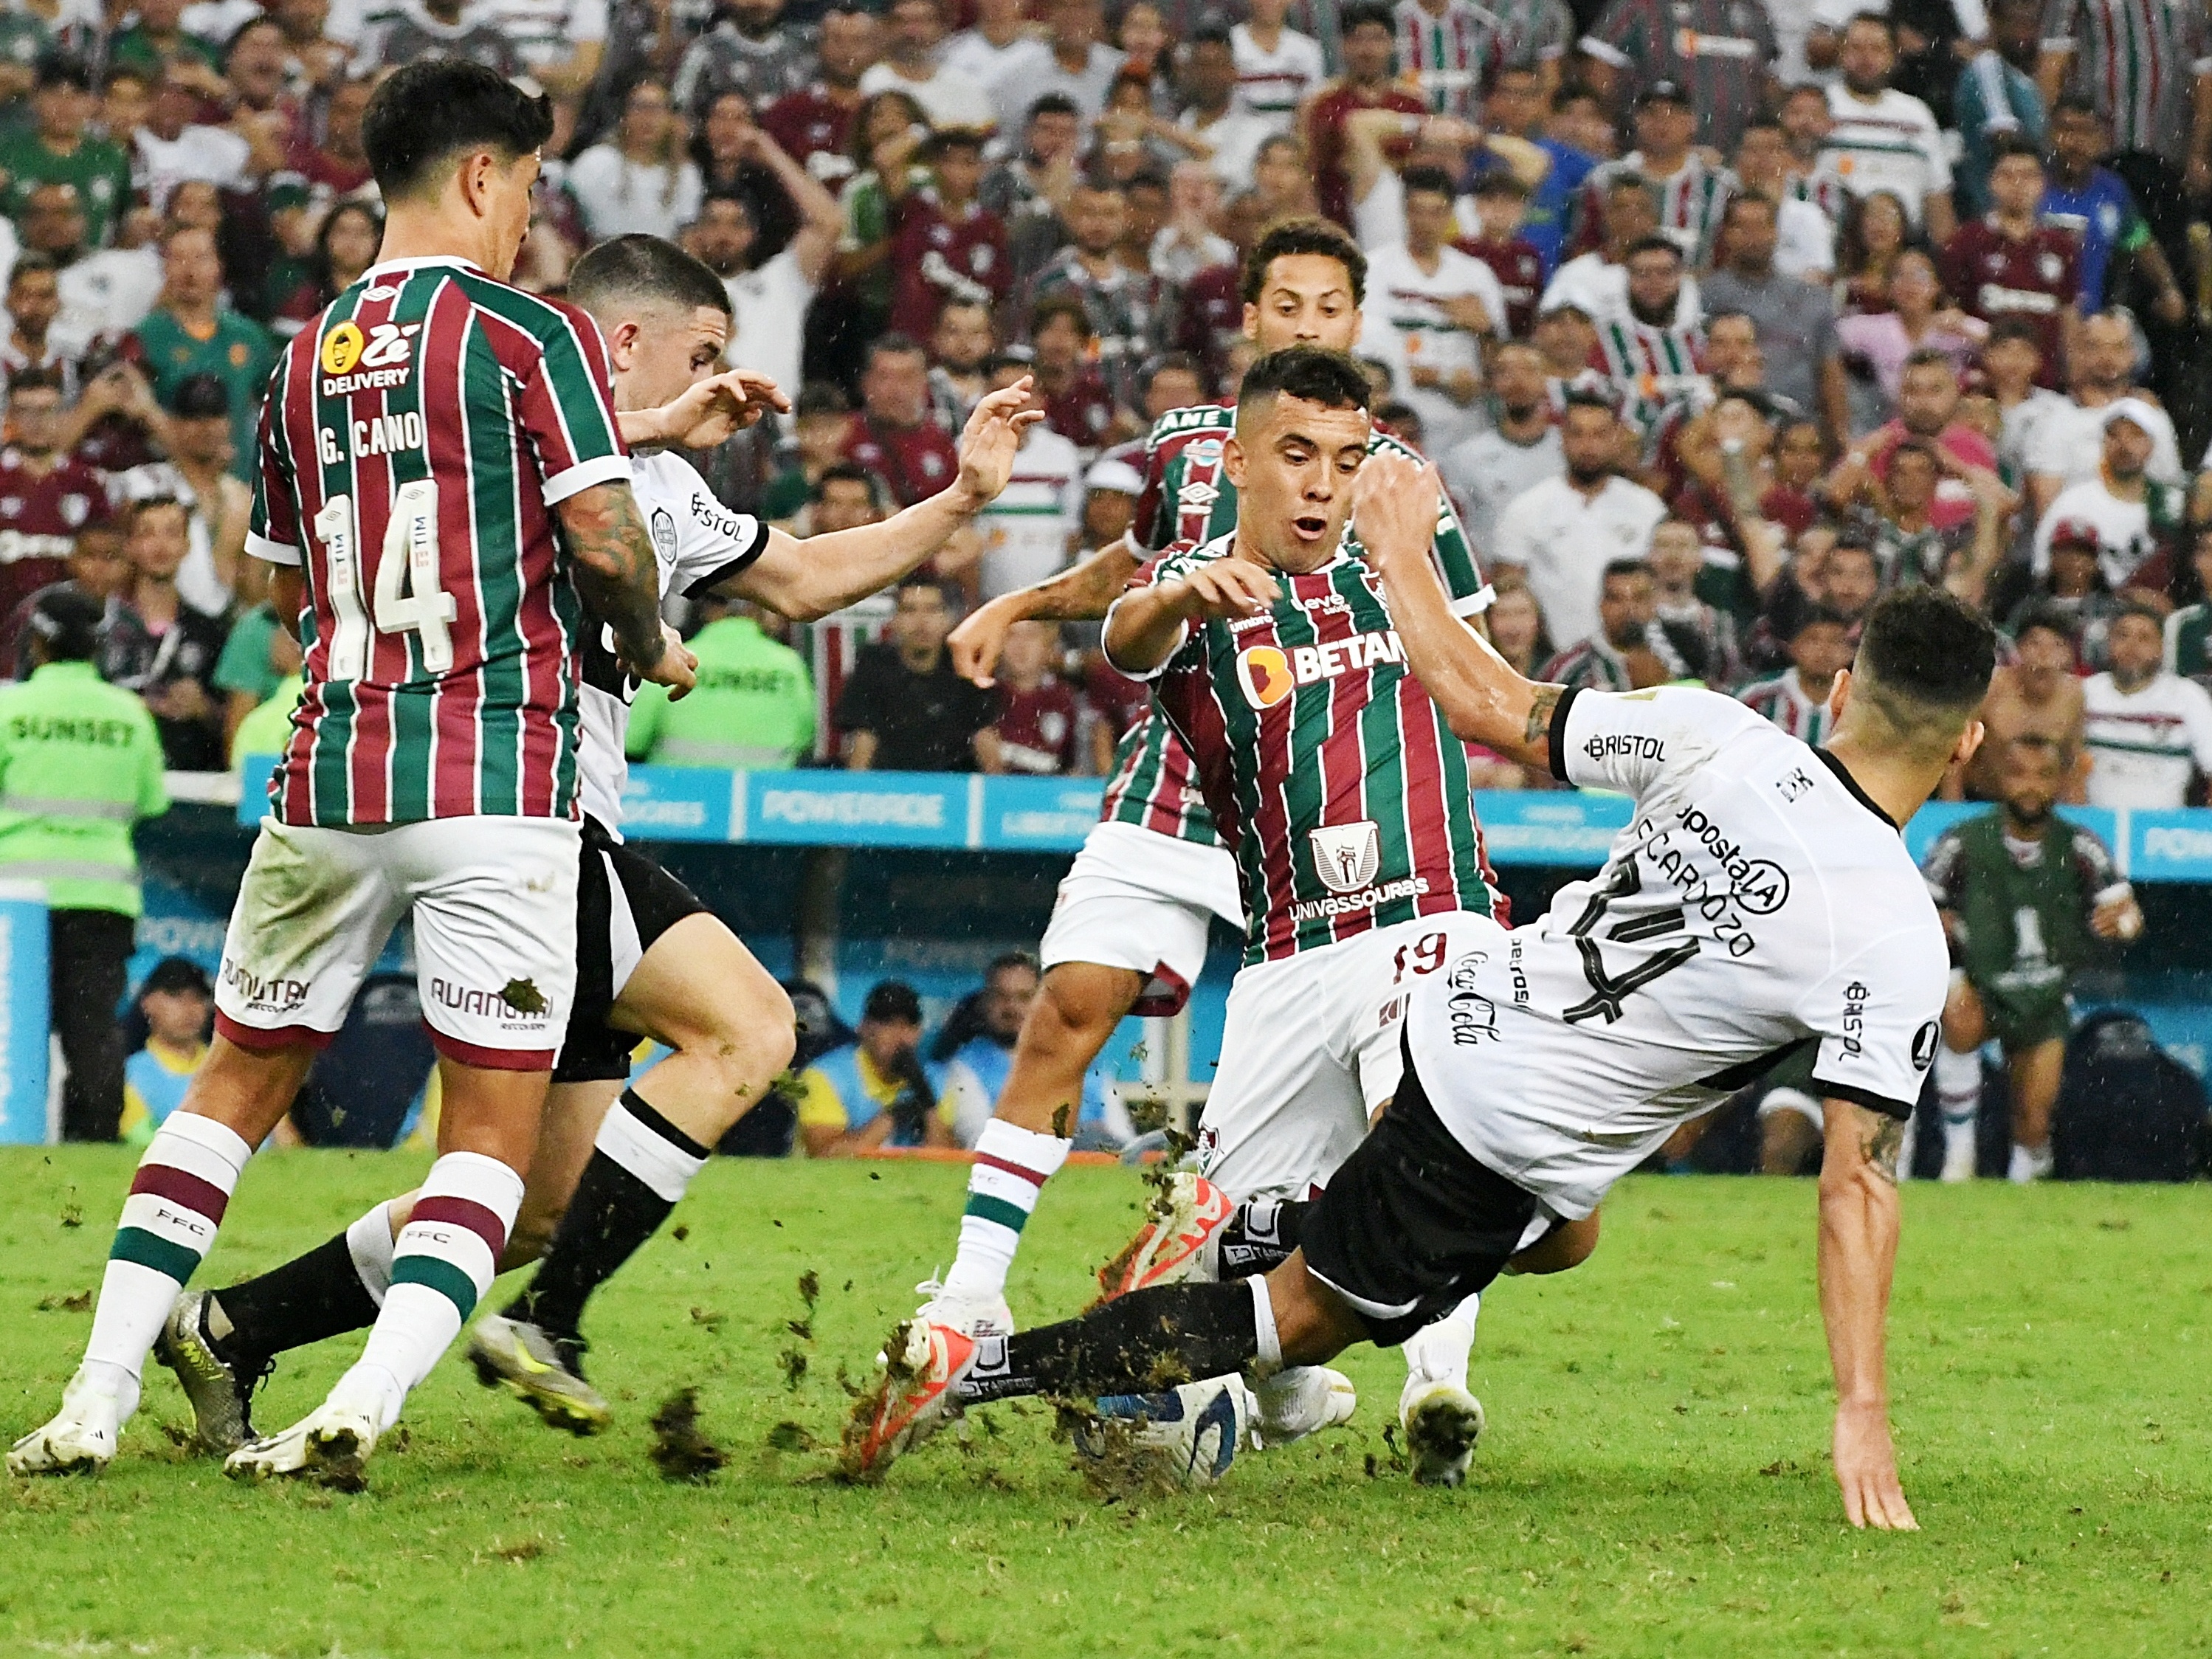 Diniz avalia qualidade do gramado para jogo do Mundial de Clubes -  Fluminense: Últimas notícias, vídeos, onde assistir e próximos jogos